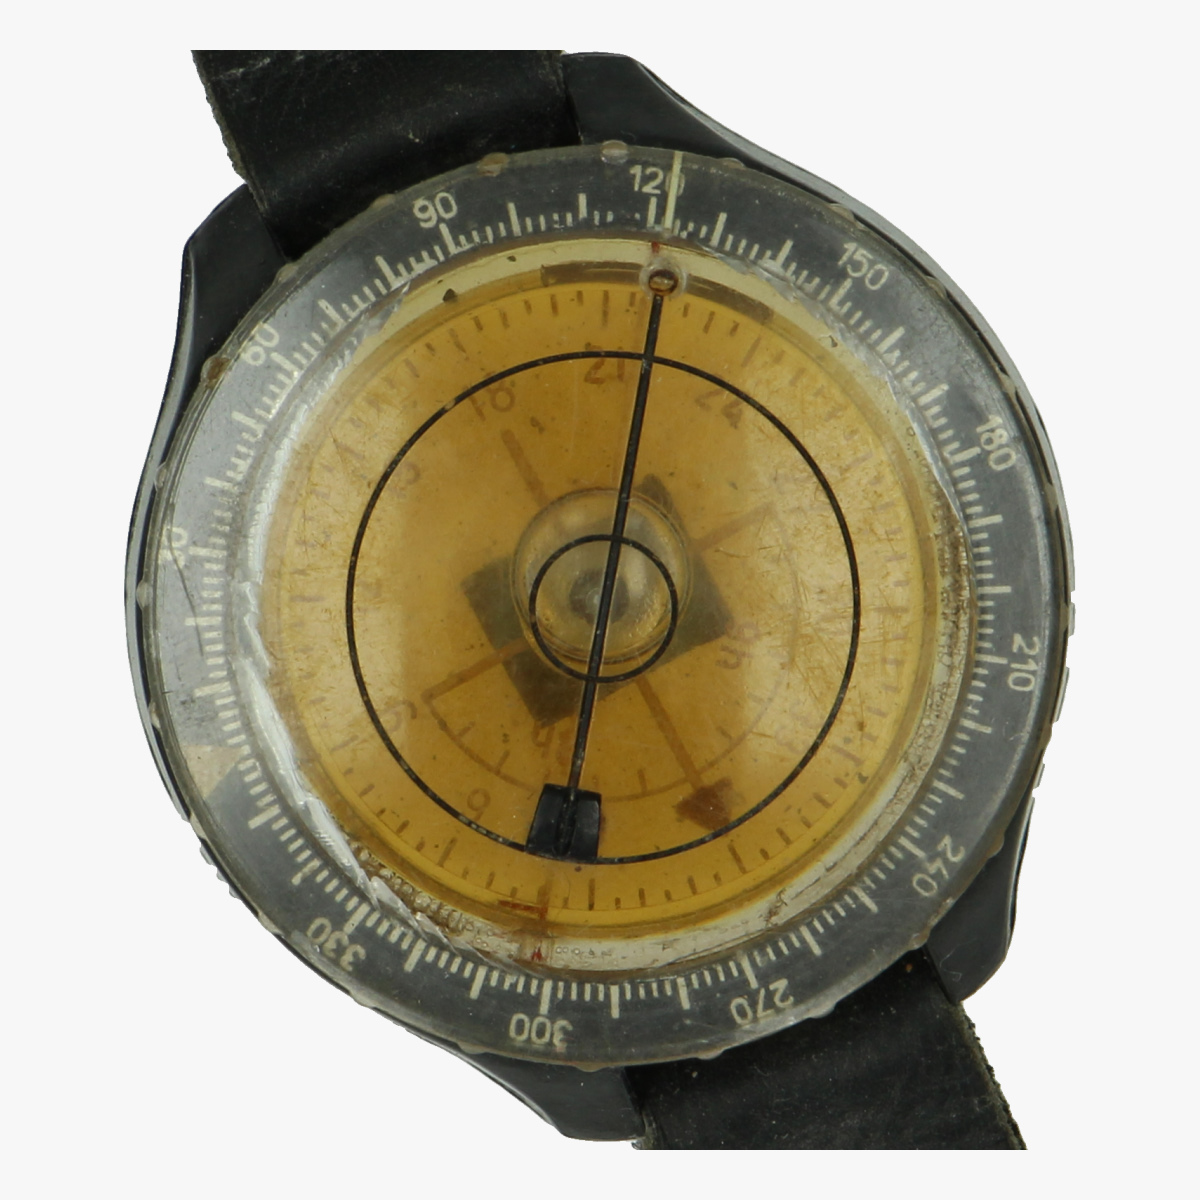 Afbeeldingen van Kompas piloot - armkompas